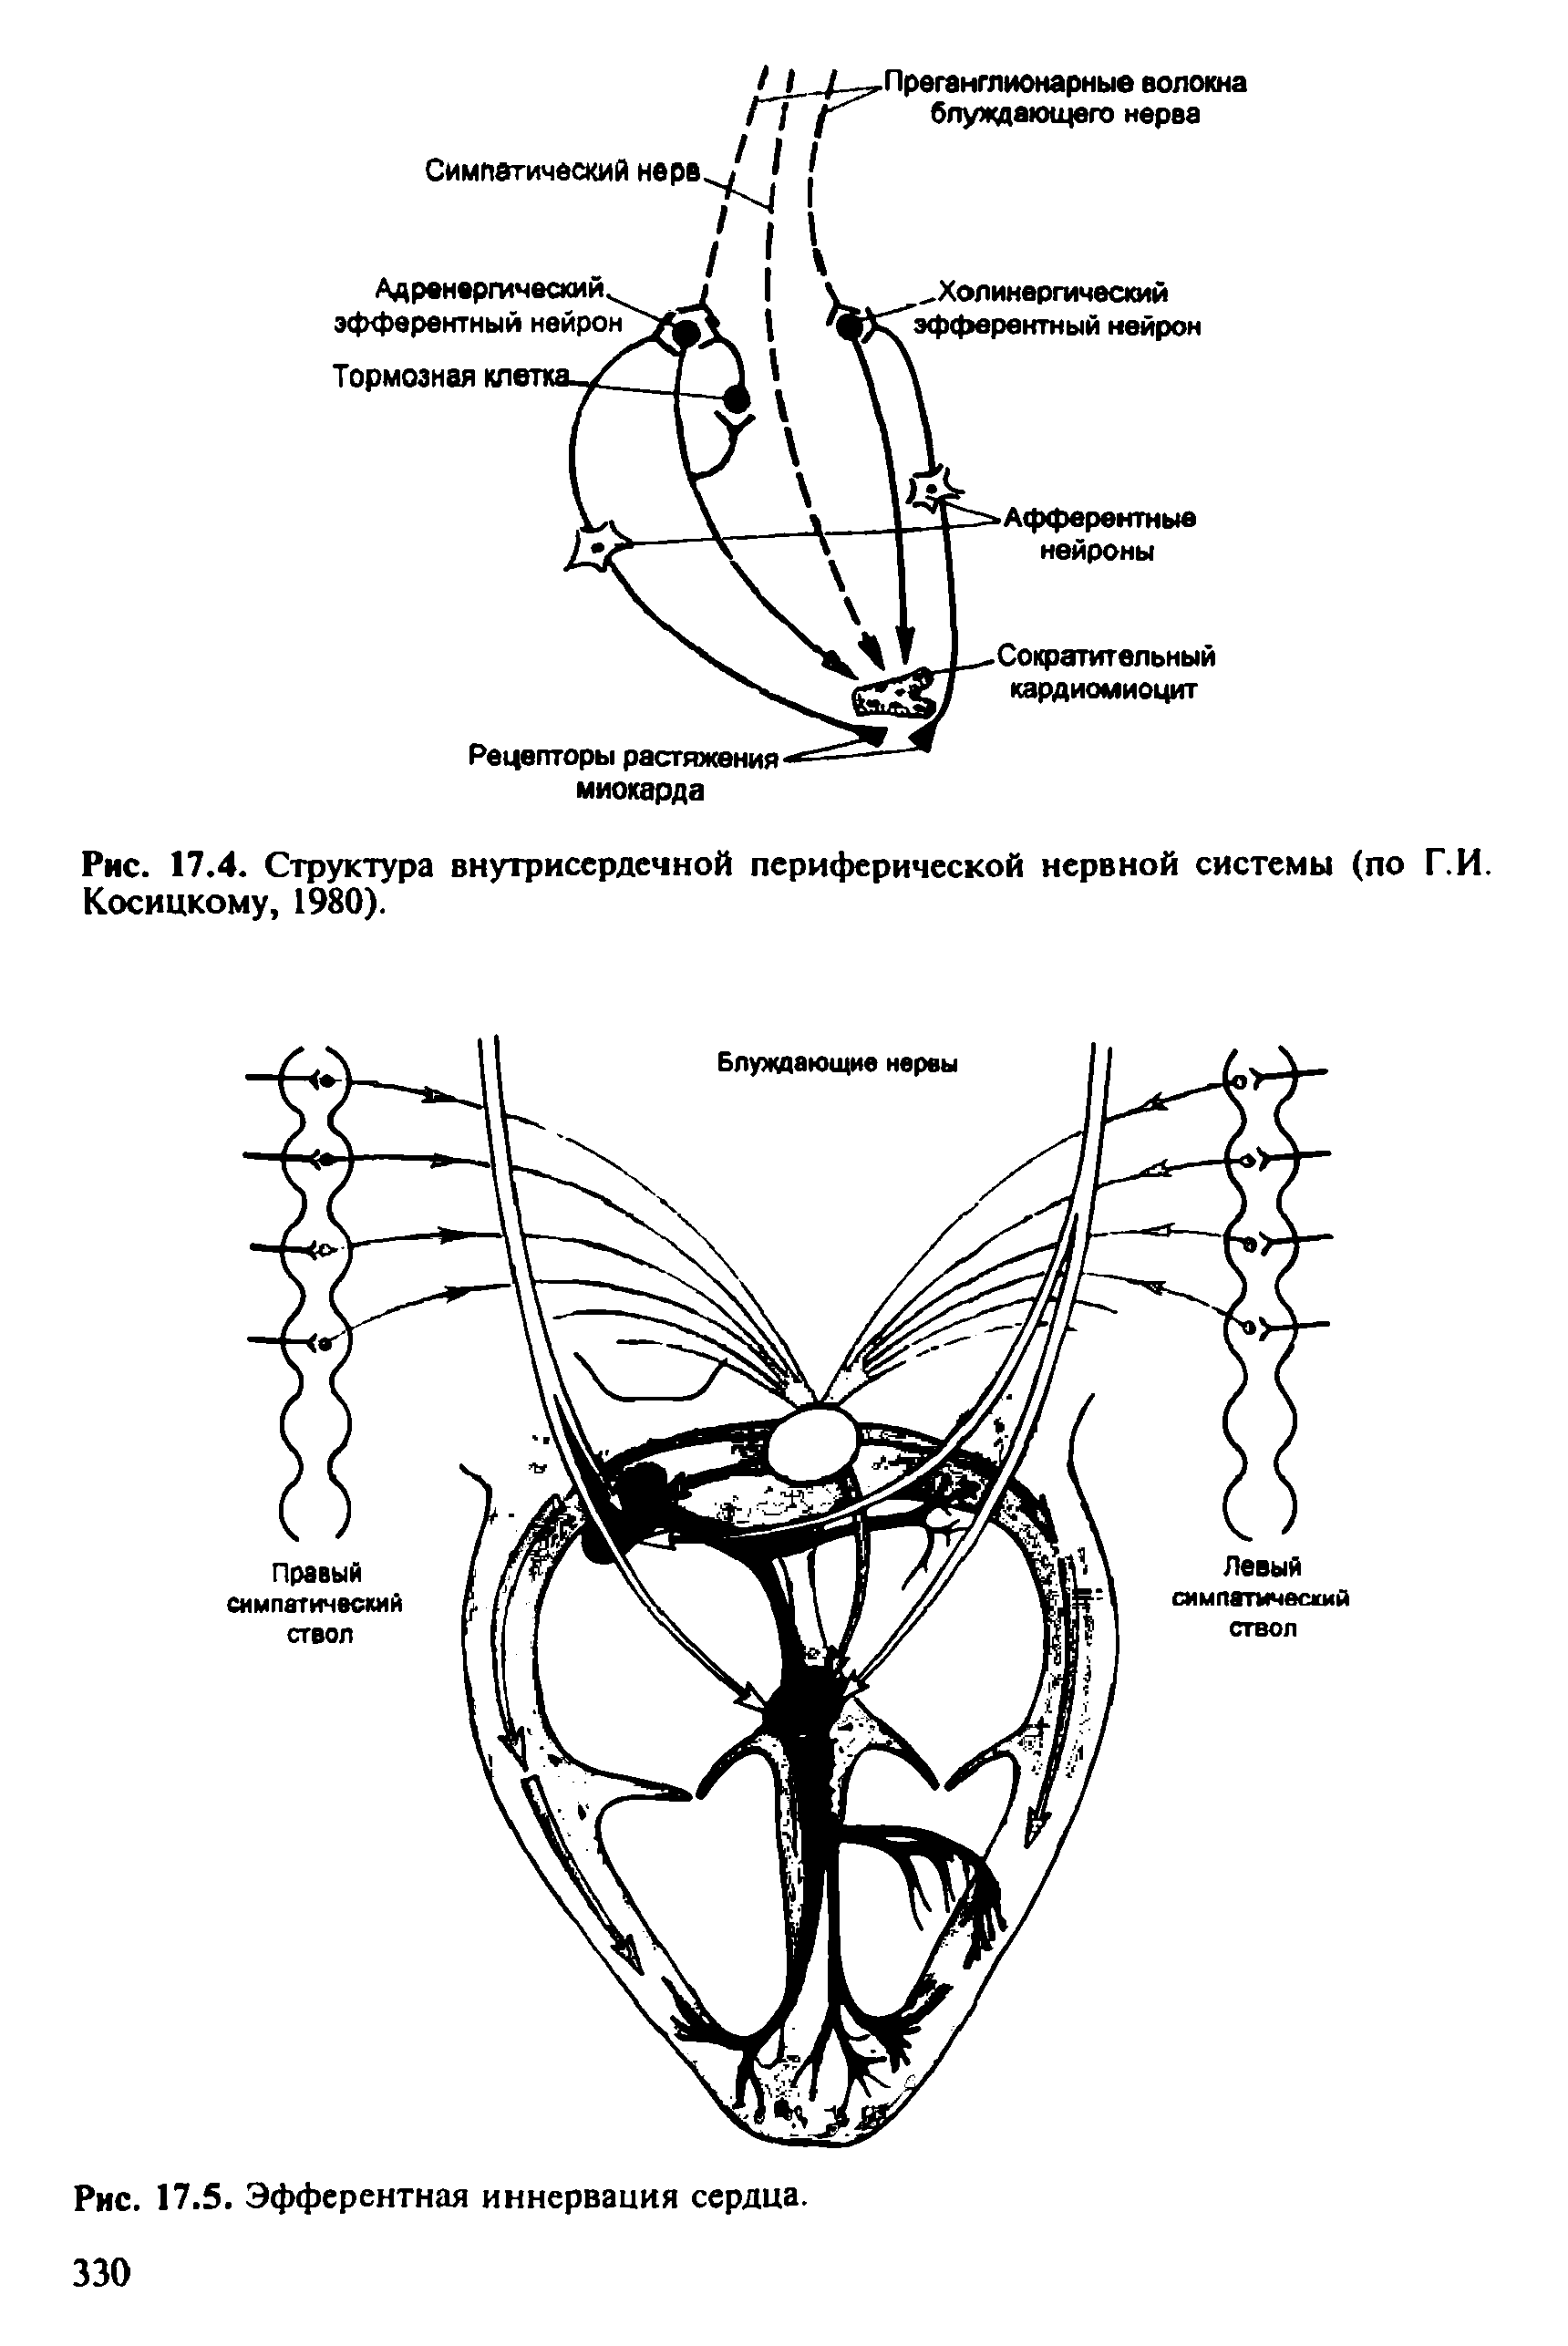 Рис. 17.4. Структура внутрисердечной периферической нервной системы (по Г.И. Косицкому, 1980).